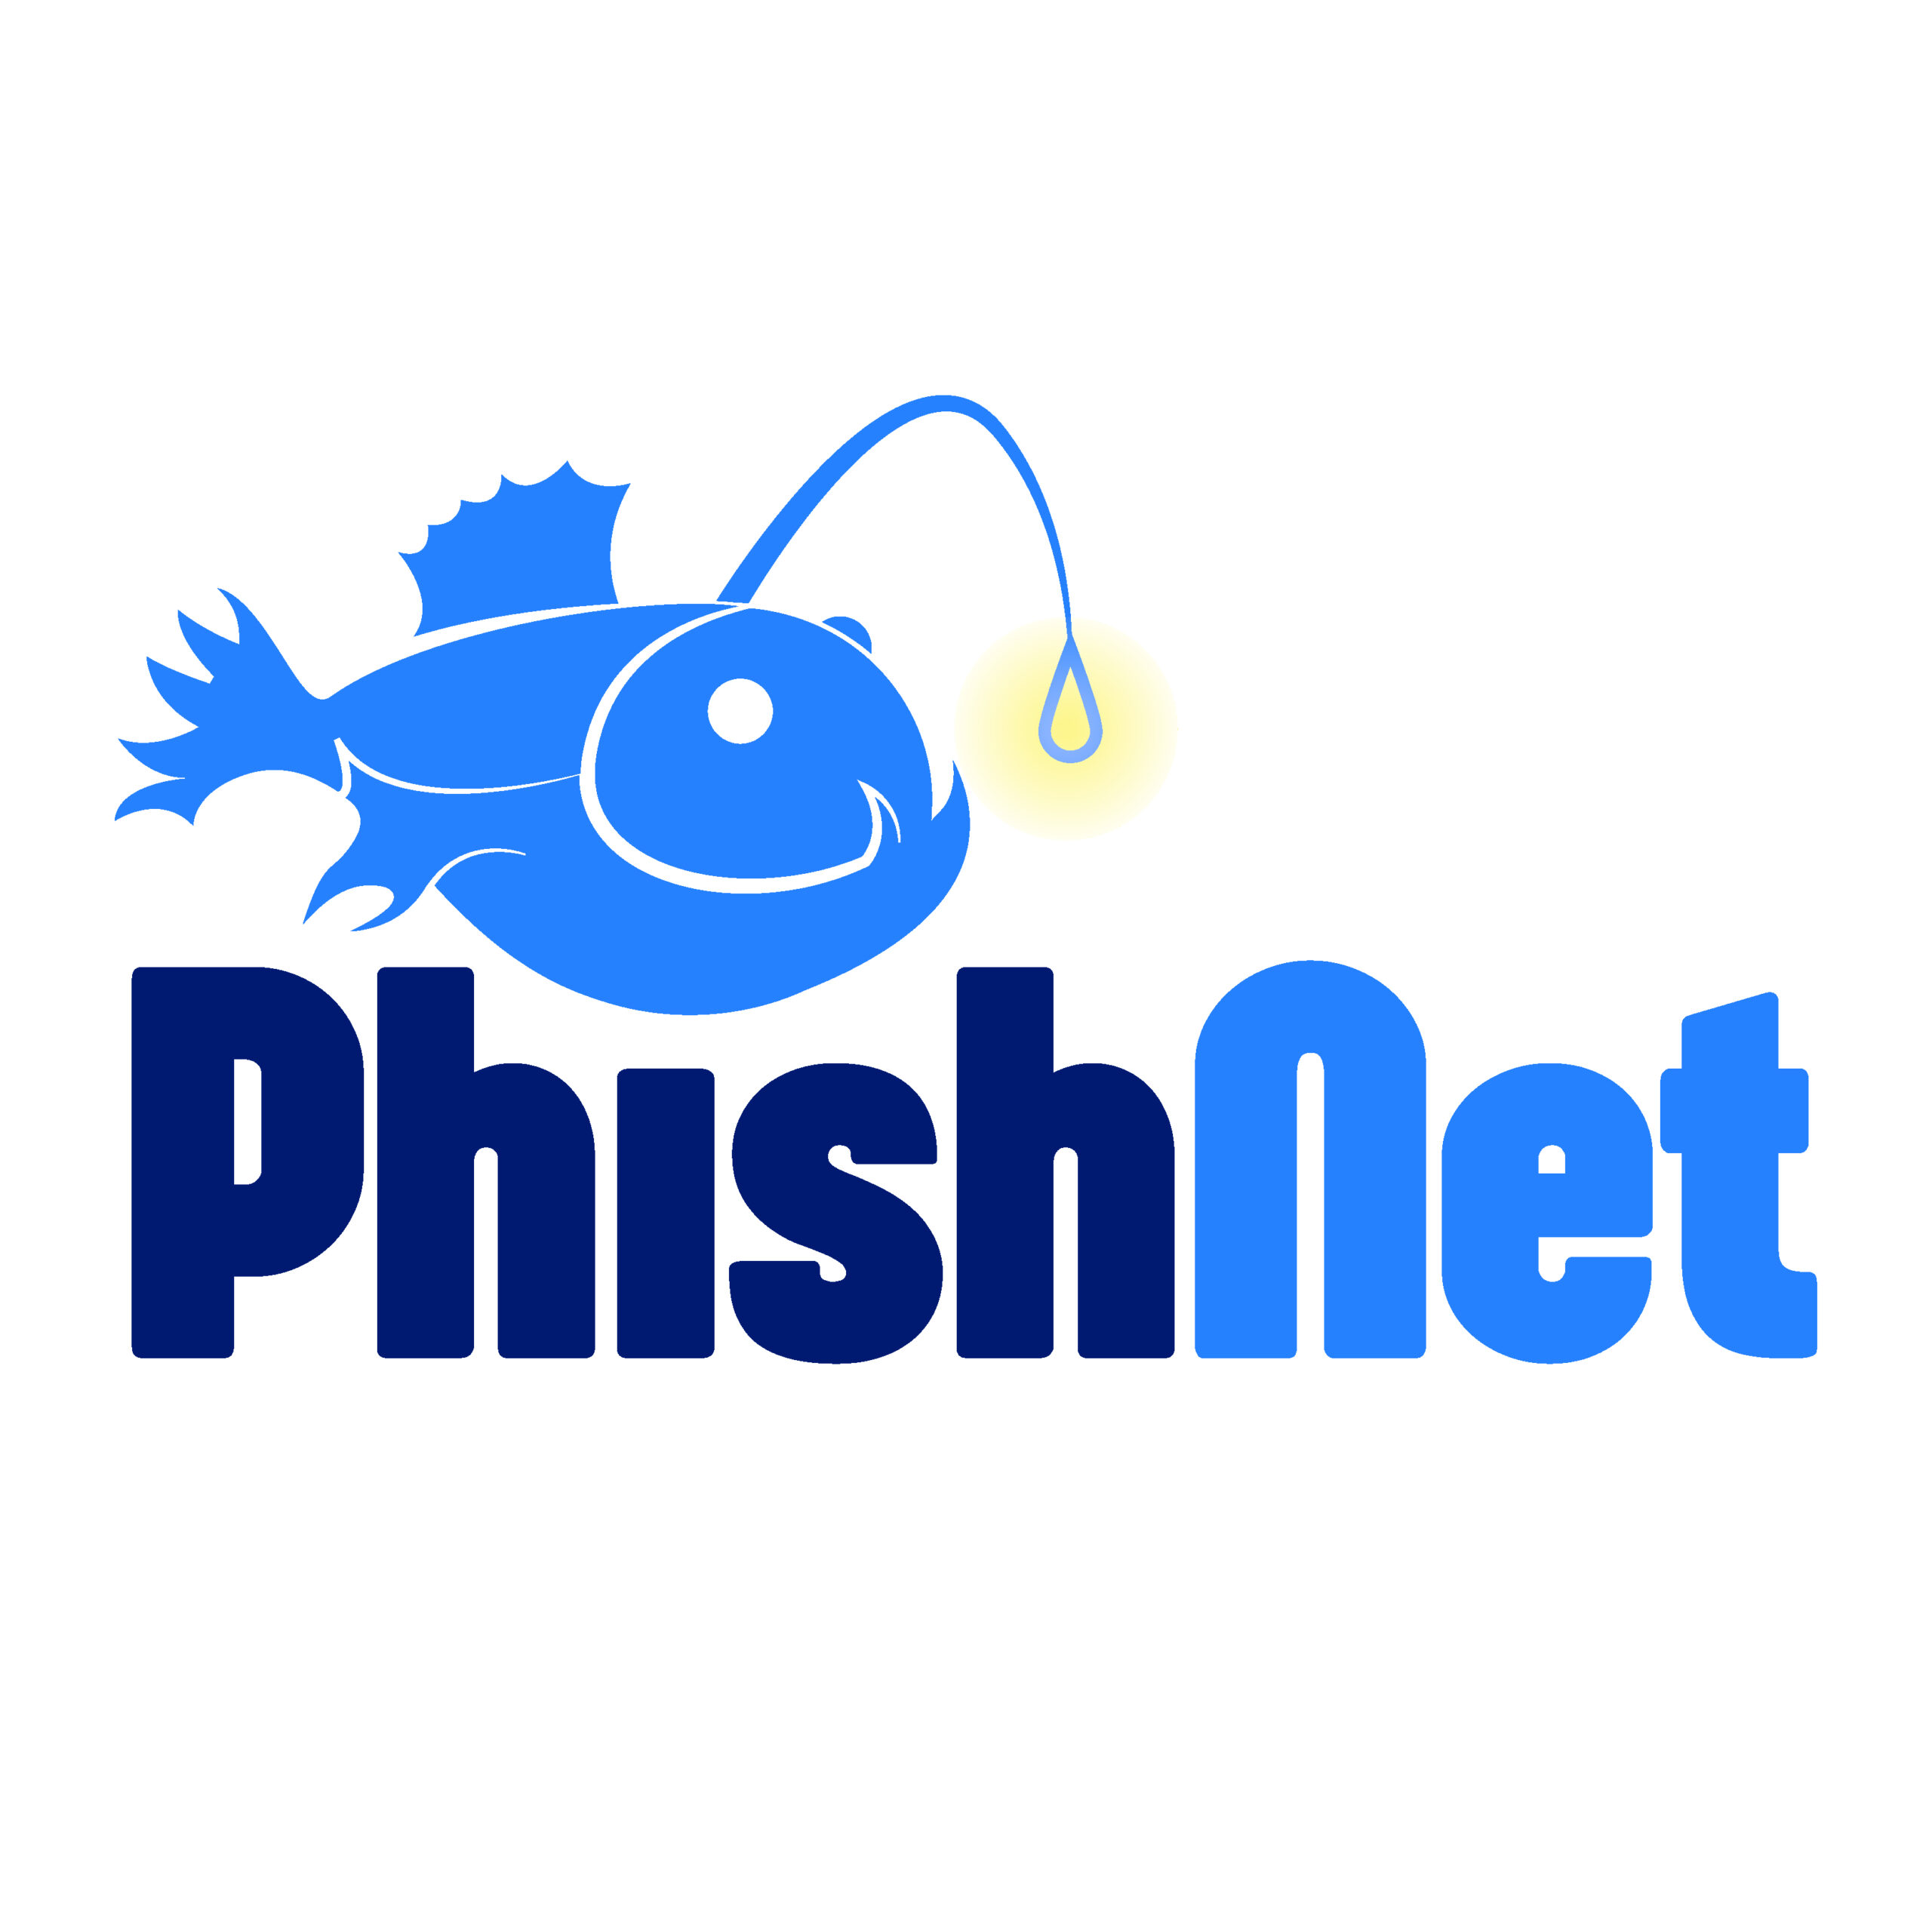 (c) Phishnet.global